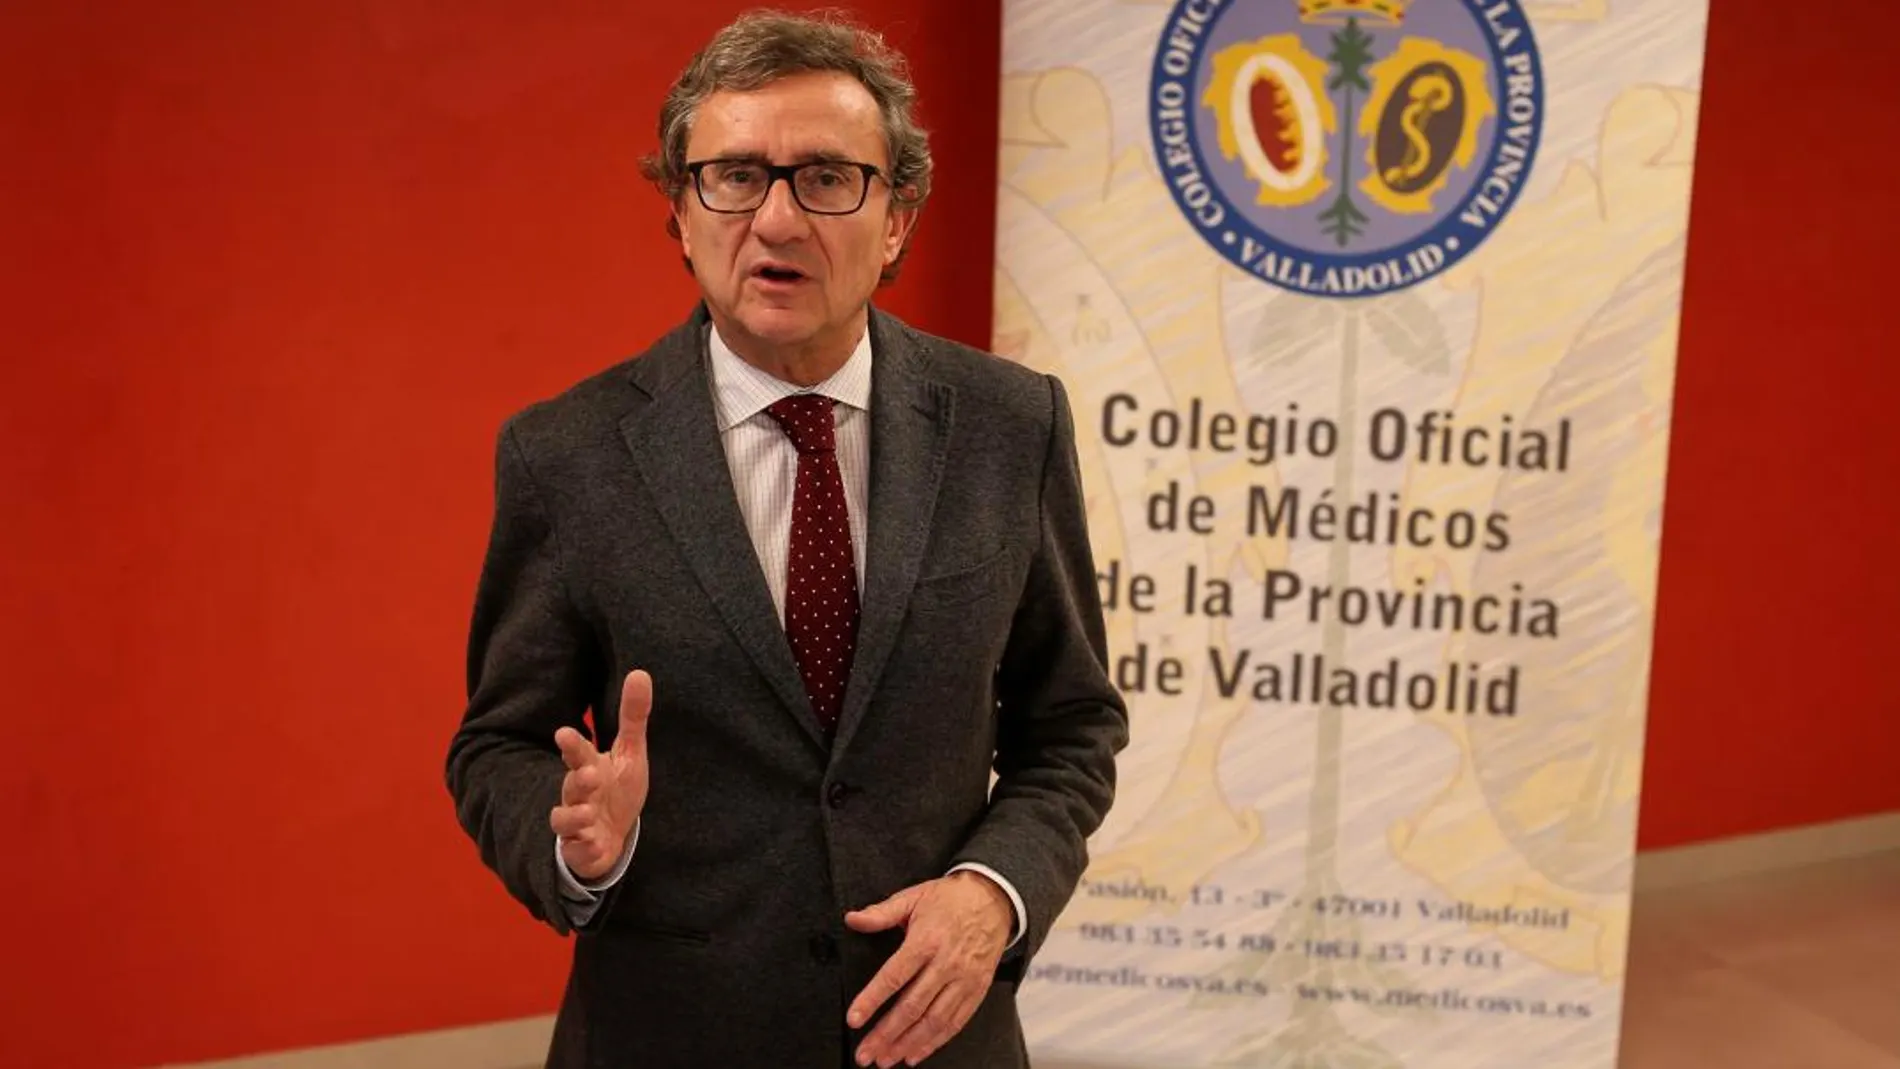 José Luis Almudi, presidente del Colegio de Médicos de Valladolid, advierte de la falta de tiempo para poder atender mejor a los pacientes en las consultas